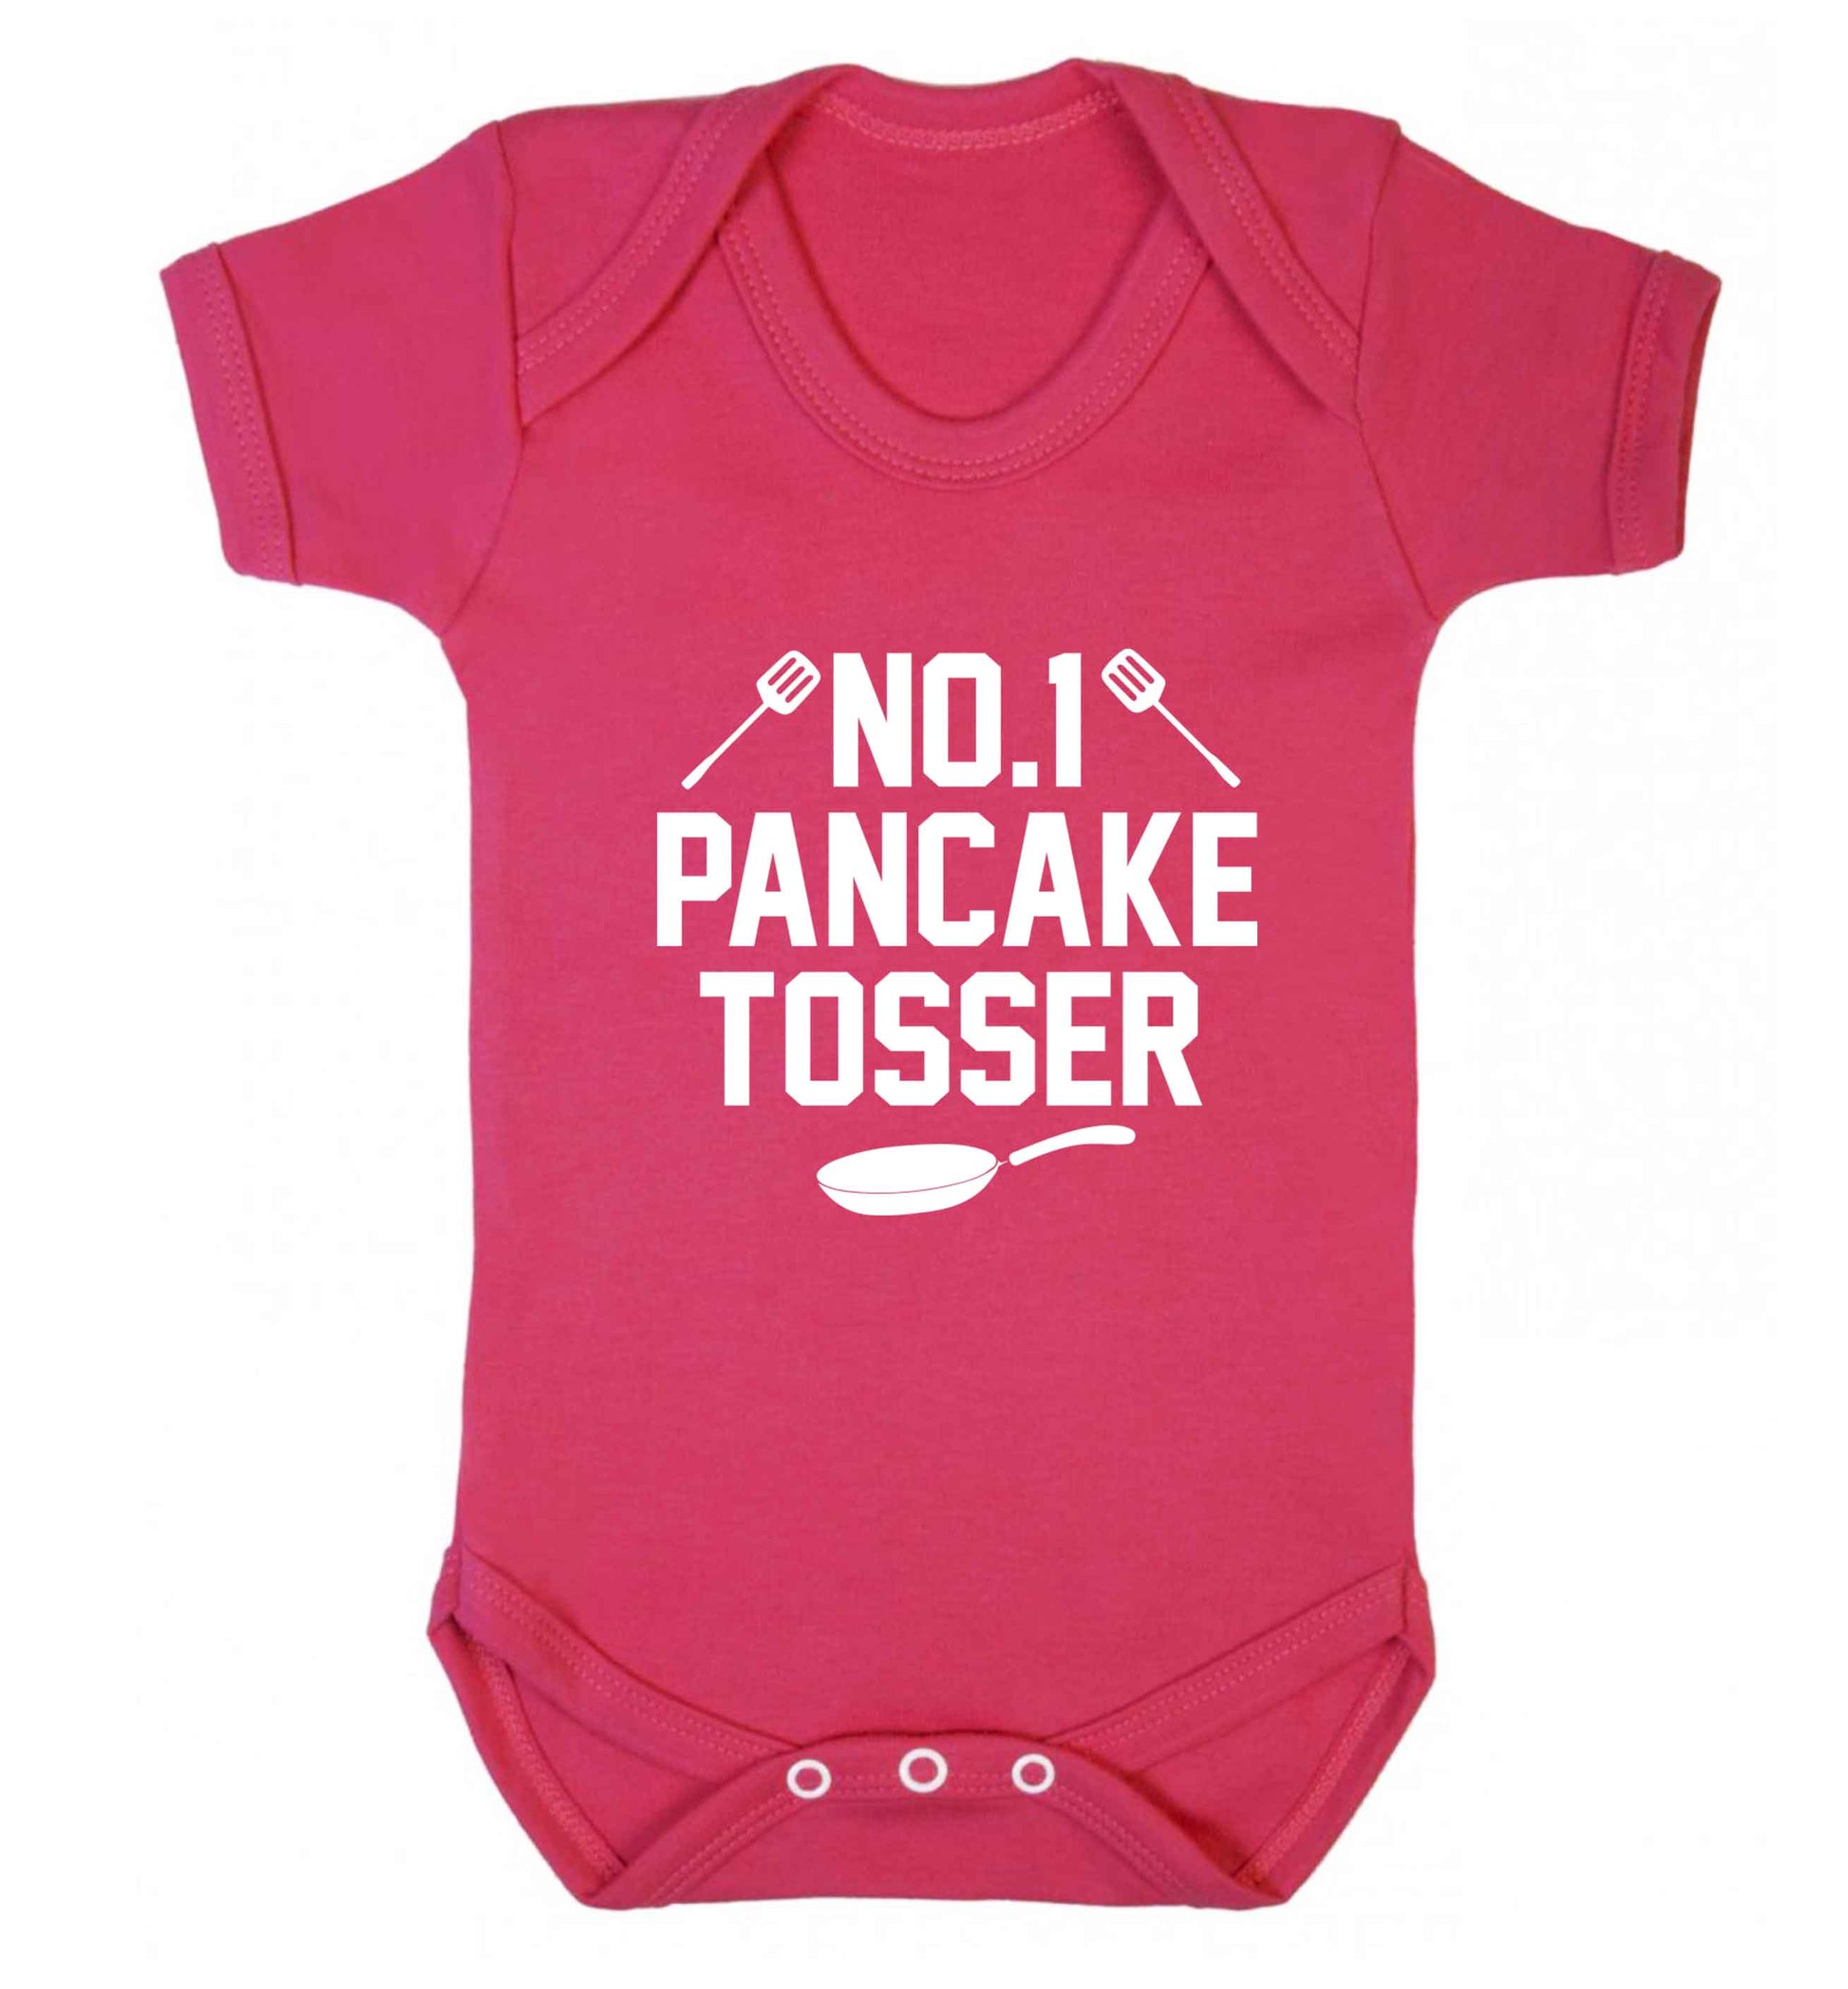 No.1 Pancake tosser baby vest dark pink 18-24 months